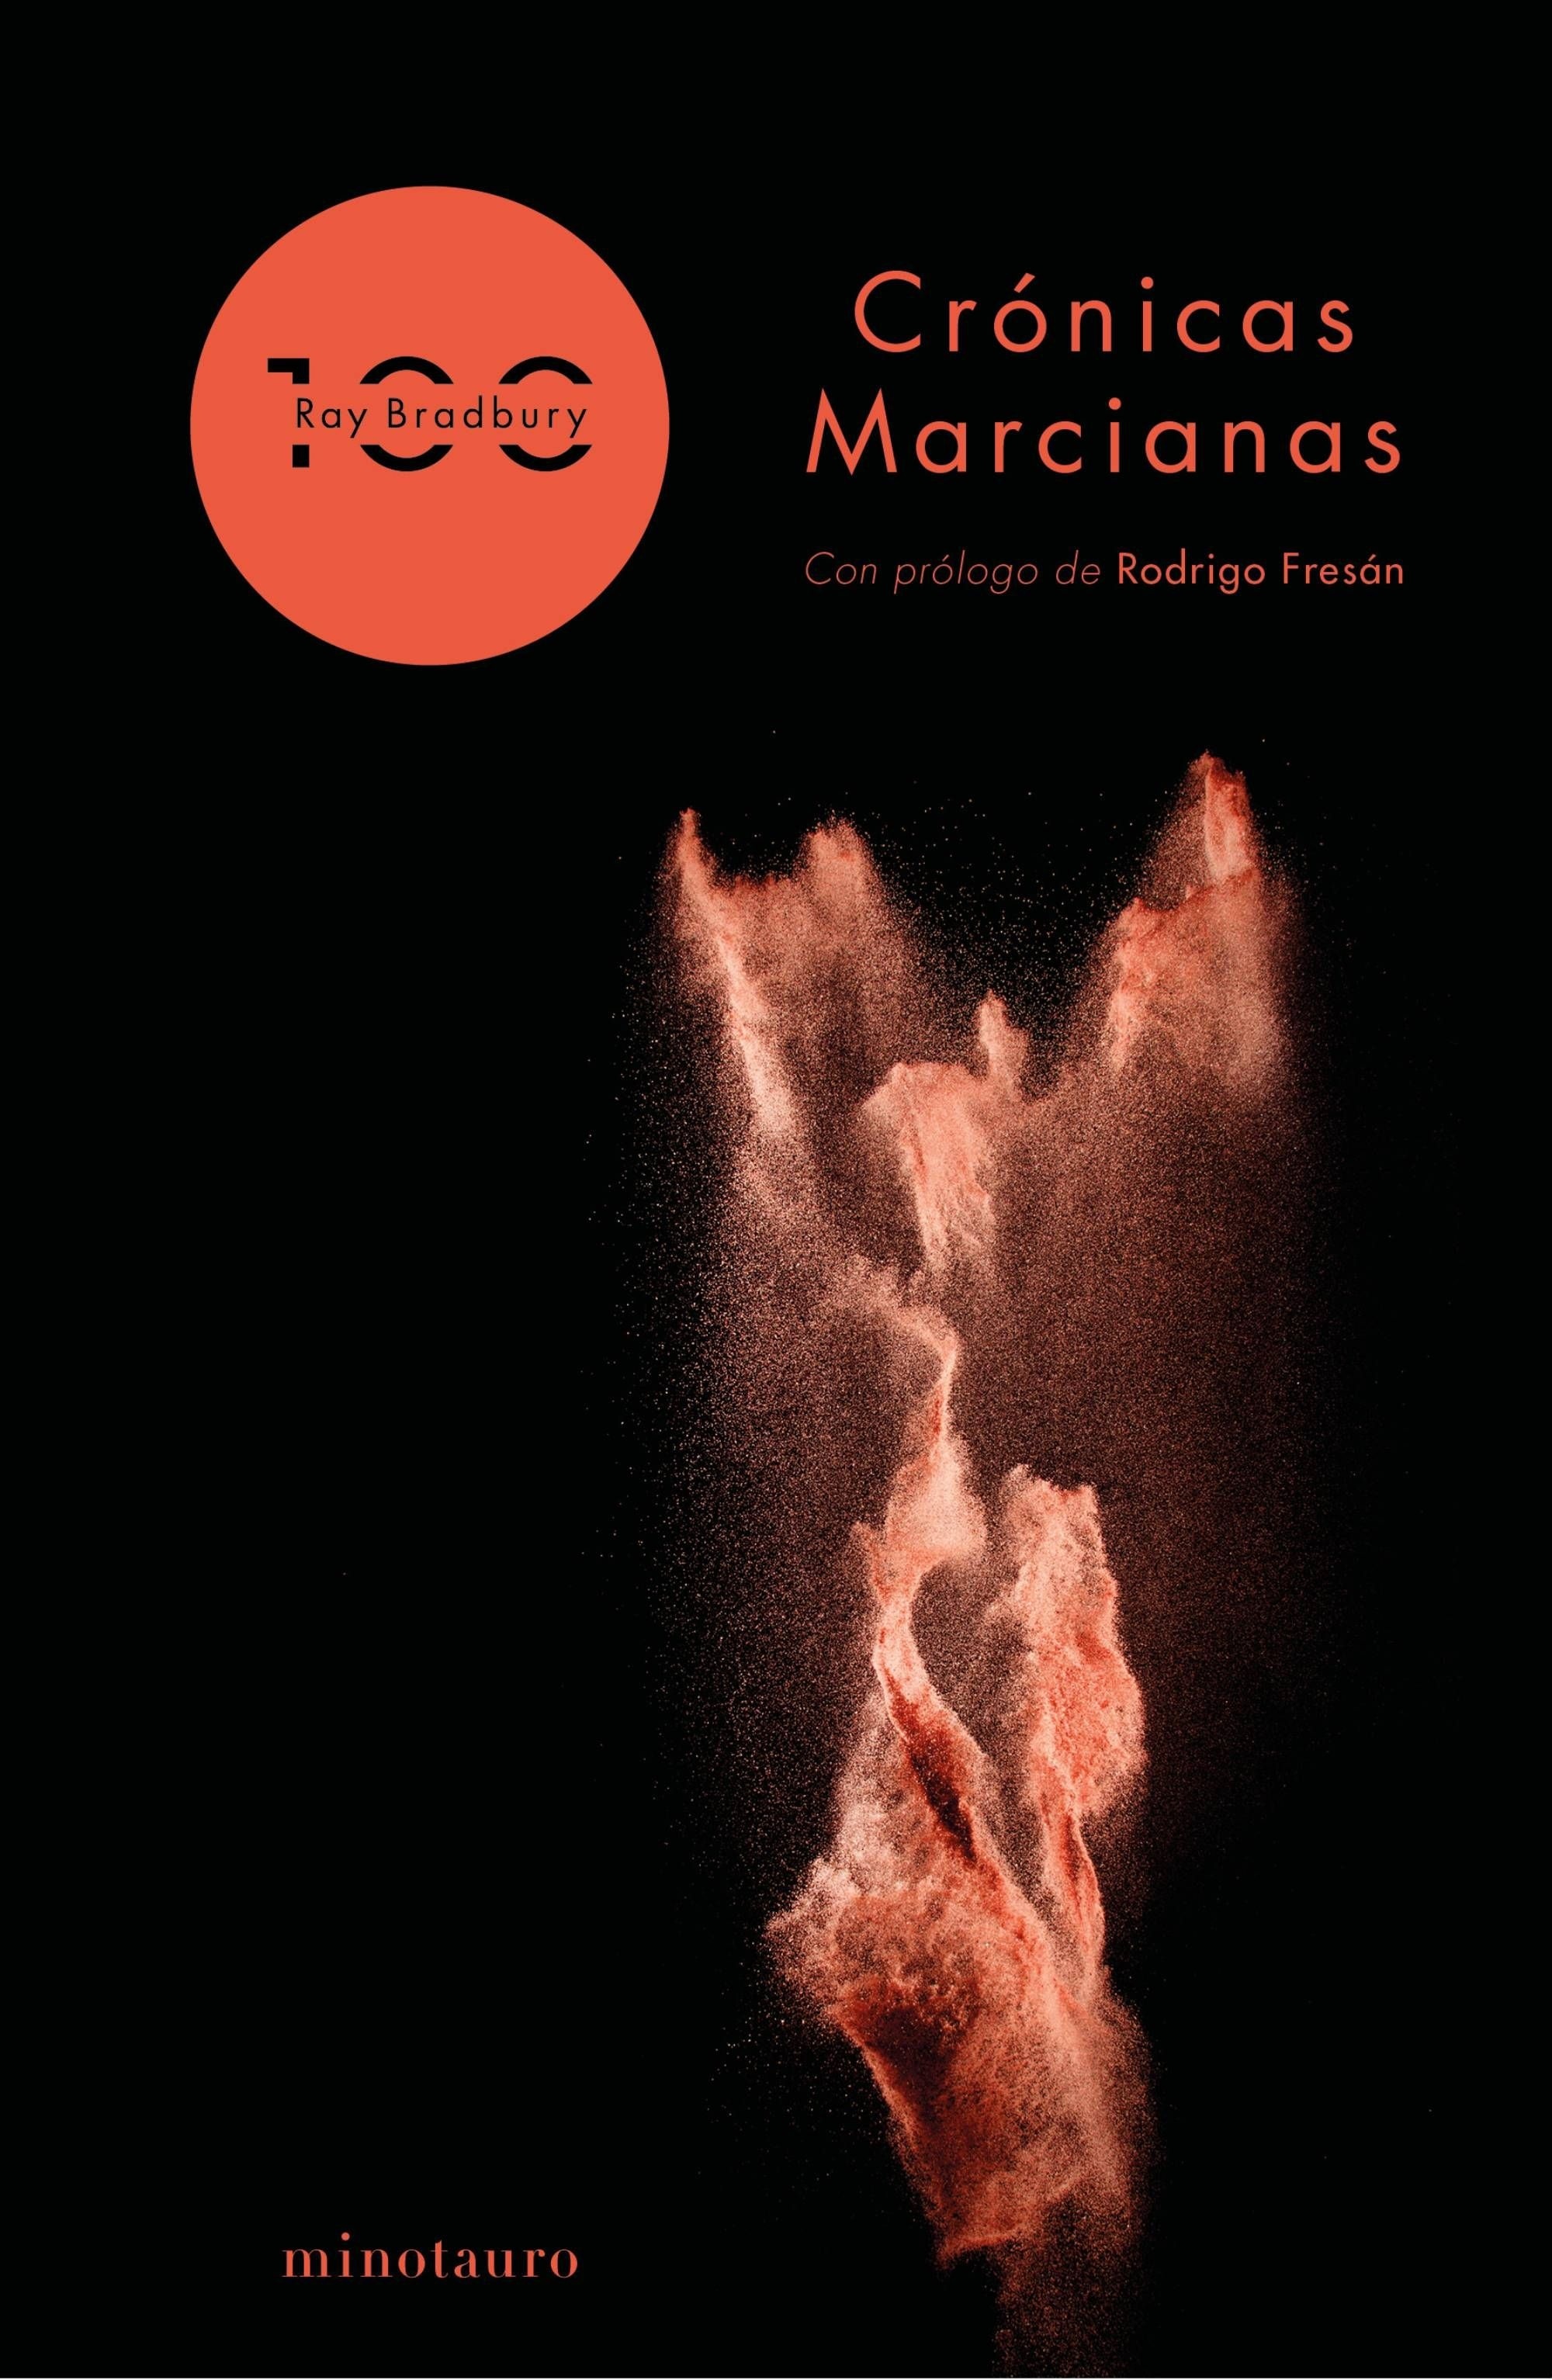 Crónicas marcianas (100 aniversario Ray Bradbury)